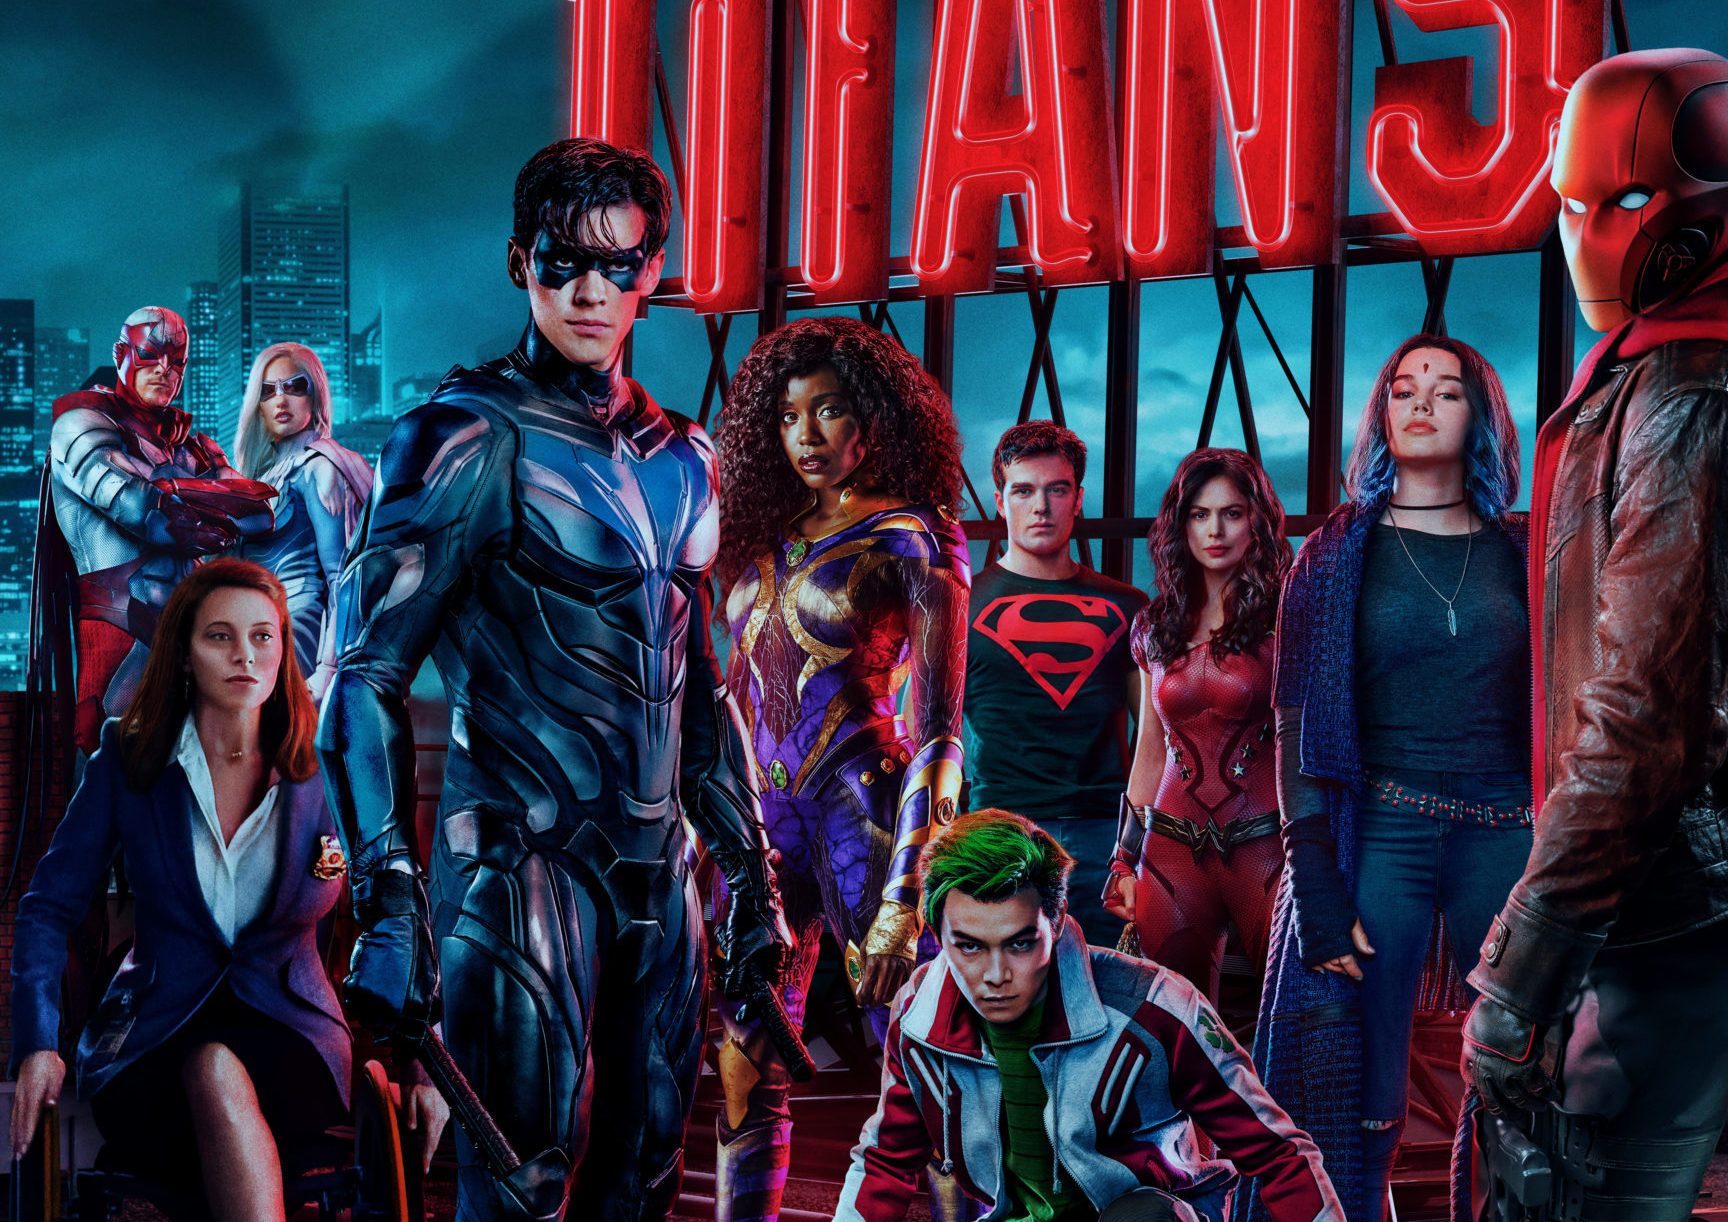 Titans' Renewed for Season 4 at HBO Max